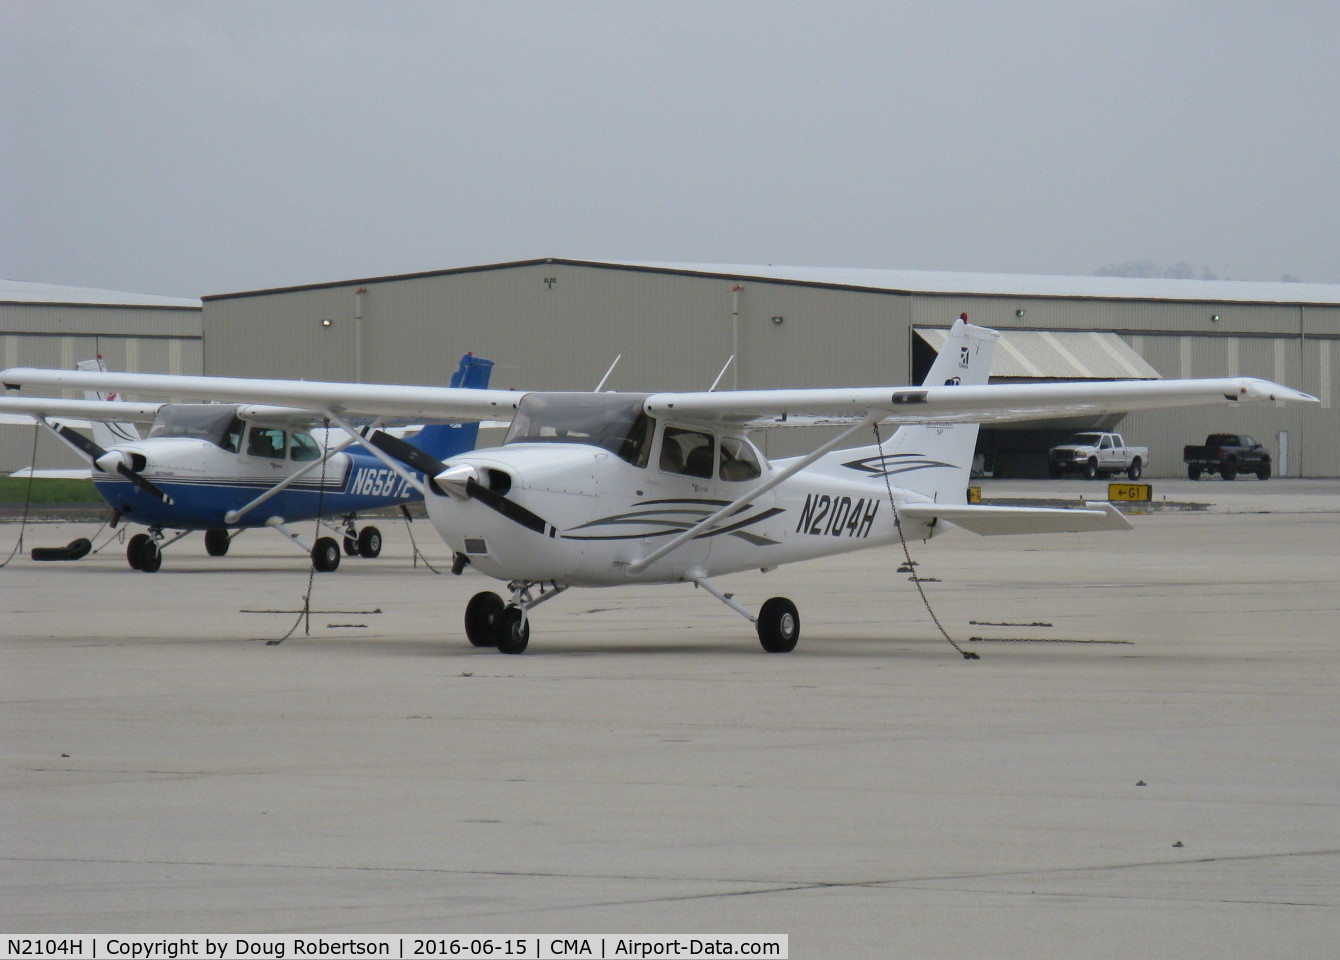 N2104H, 2007 Cessna 172S SP II C/N 172S10432, 2007 Cessna 172S SKYHAWK SP, Lycoming IO-360-L2A 180 Hp, CS prop